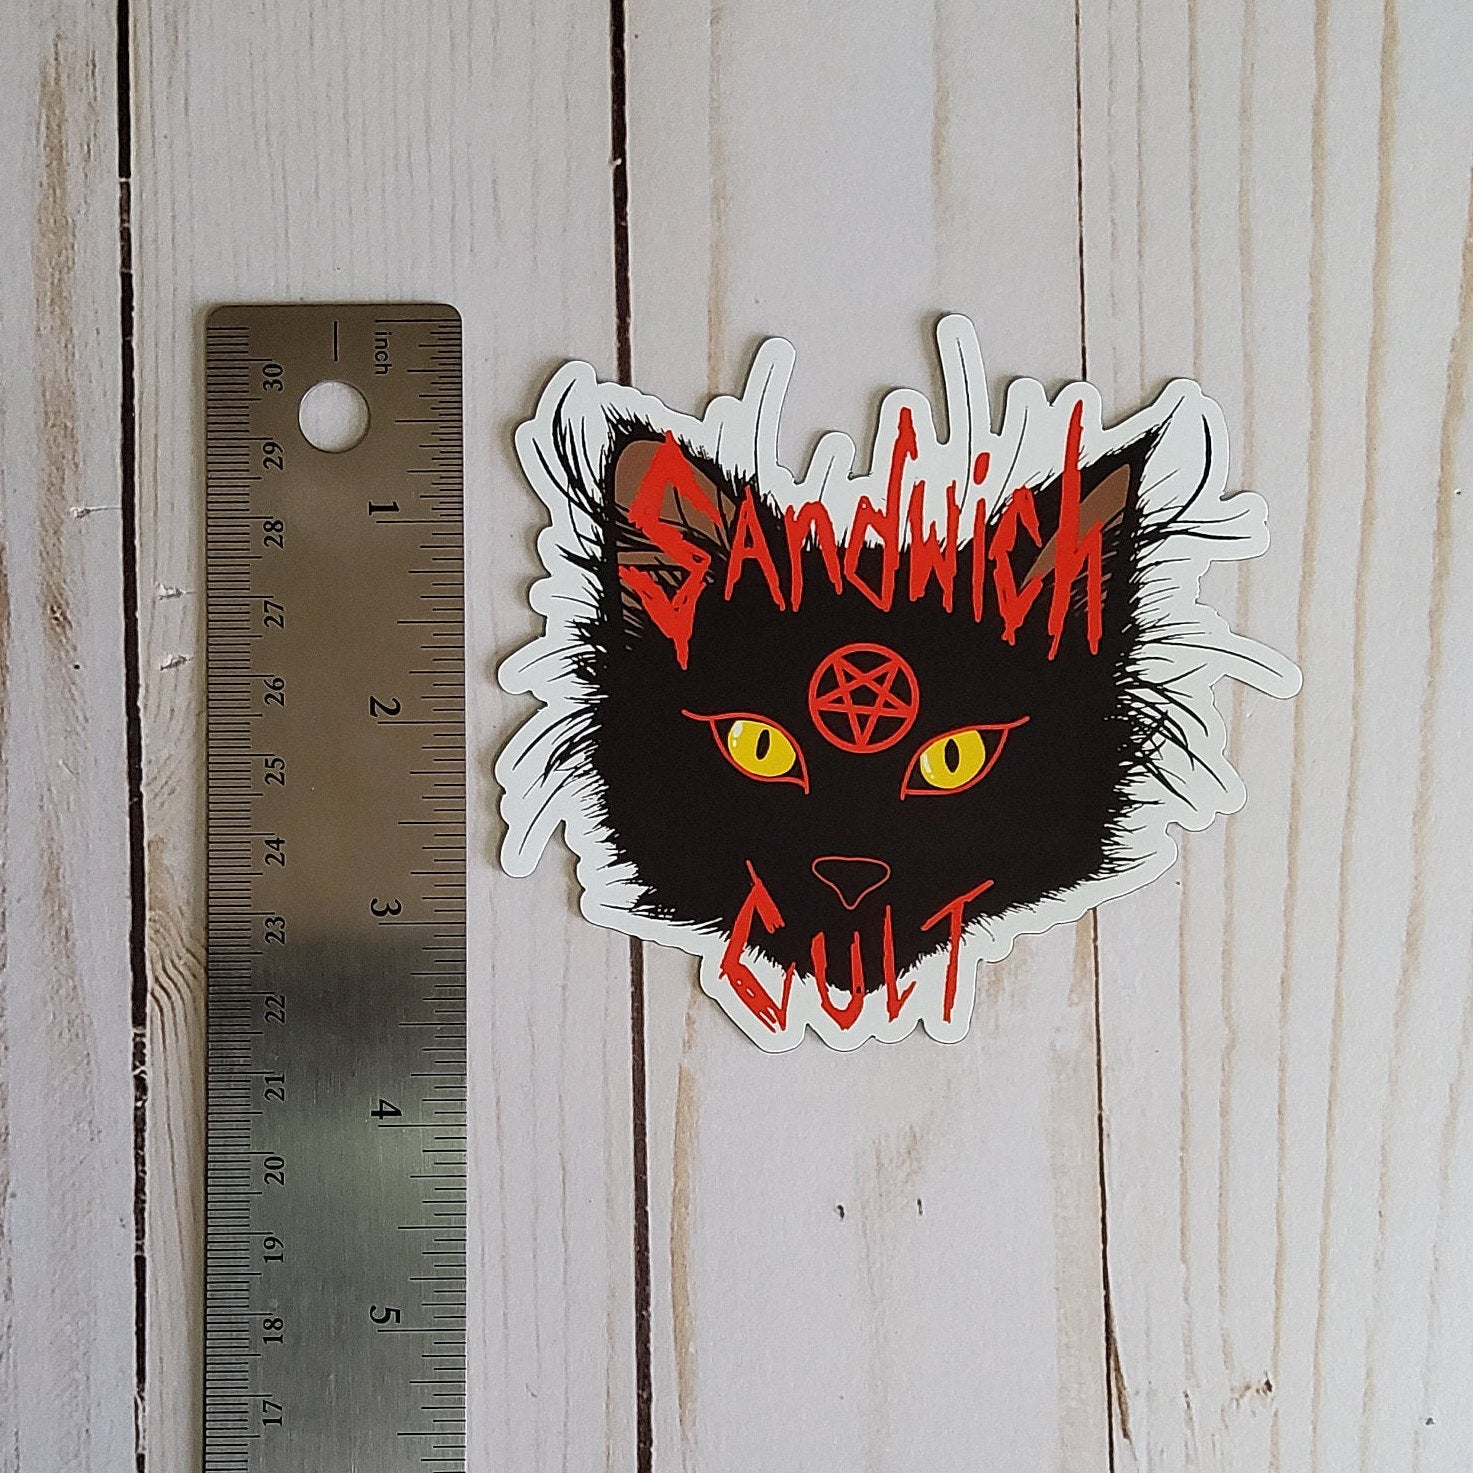 MAGNET: Sandwich Cult Black Cat Decorative , Sandwich Cult Magnet , Black Cat Magnet , Black Cat Cult Magnet , Black Cat Decorative Magnet